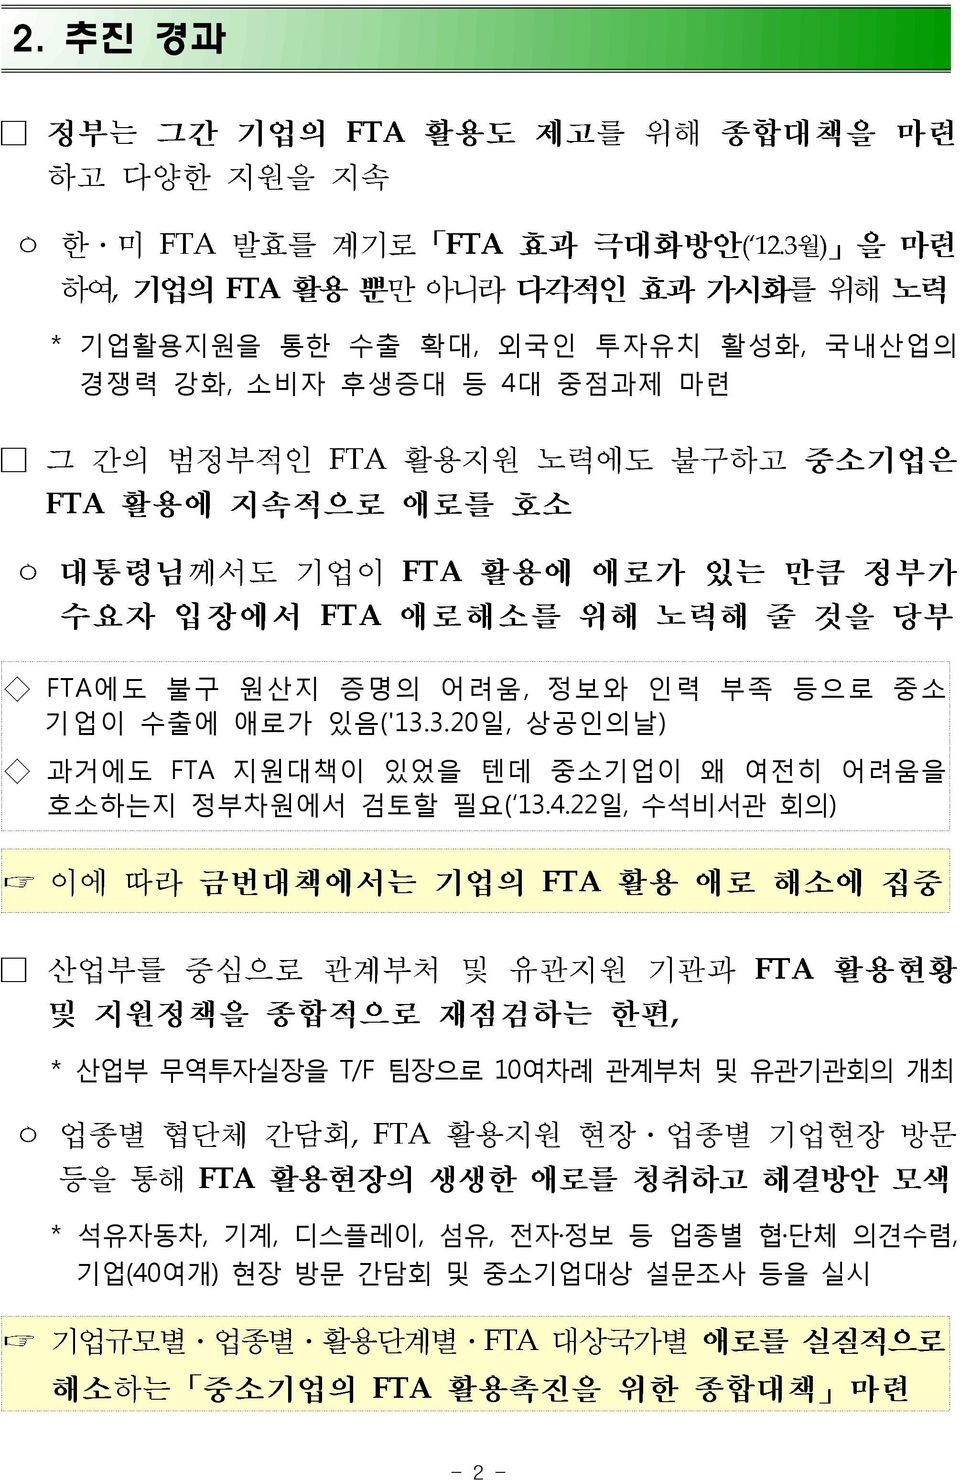 3.20일, 상공인의날) 과거에도 FTA 지원대책이 있었을 텐데 중소기업이 왜 여전히 어려움을 호소하는지 정부차원에서 검토할 필요( 13.4.